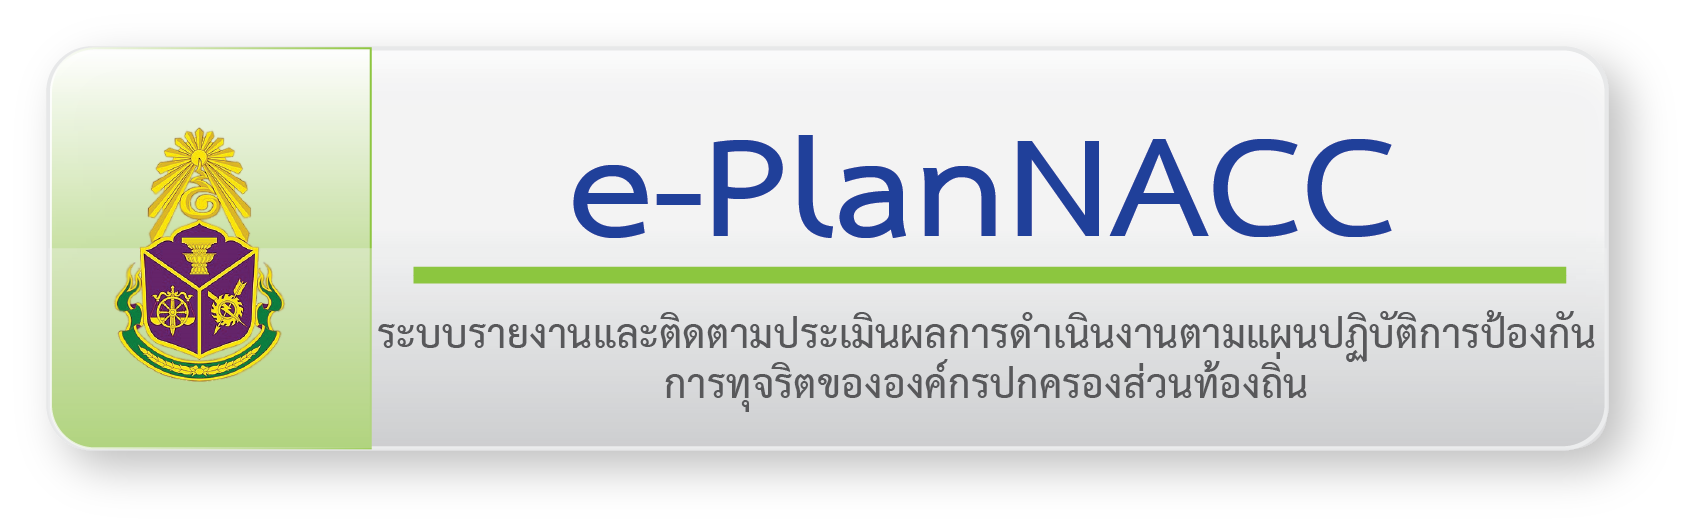 E-PlanNACC